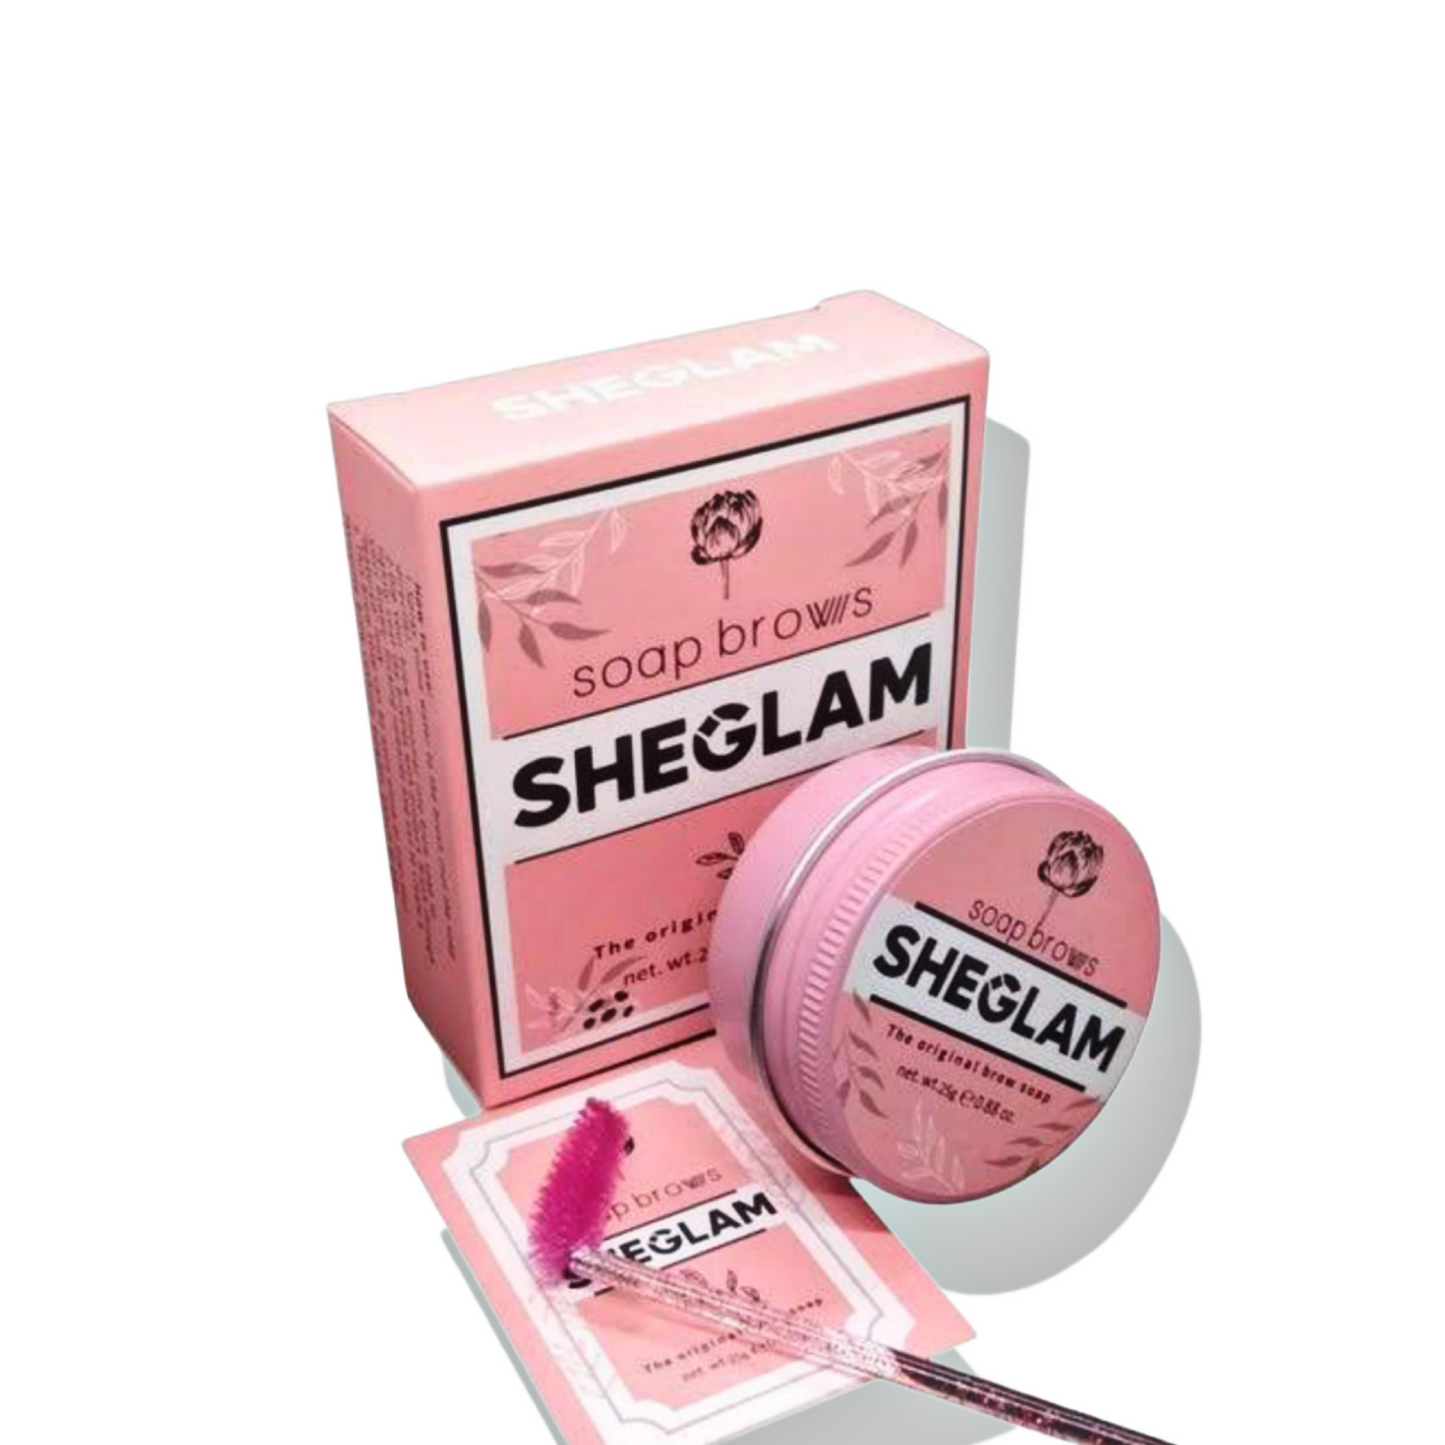 Sheglam Soap Brows